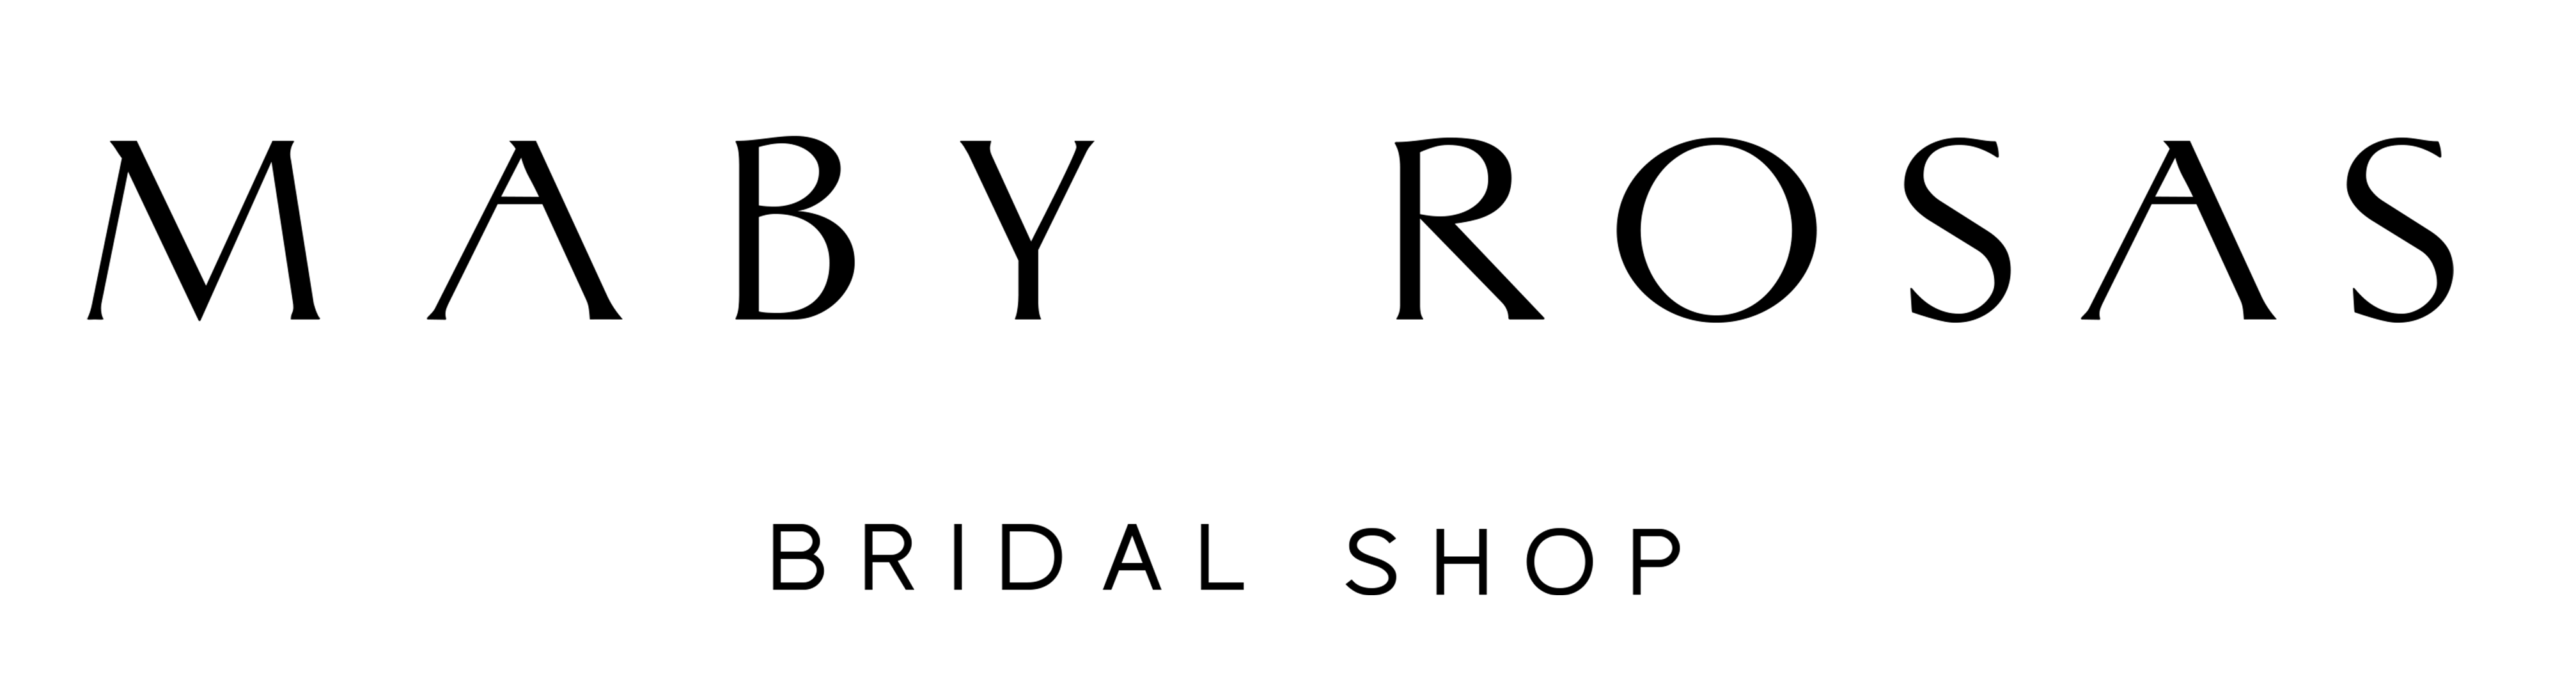 Maby Rosas Bridal Shop